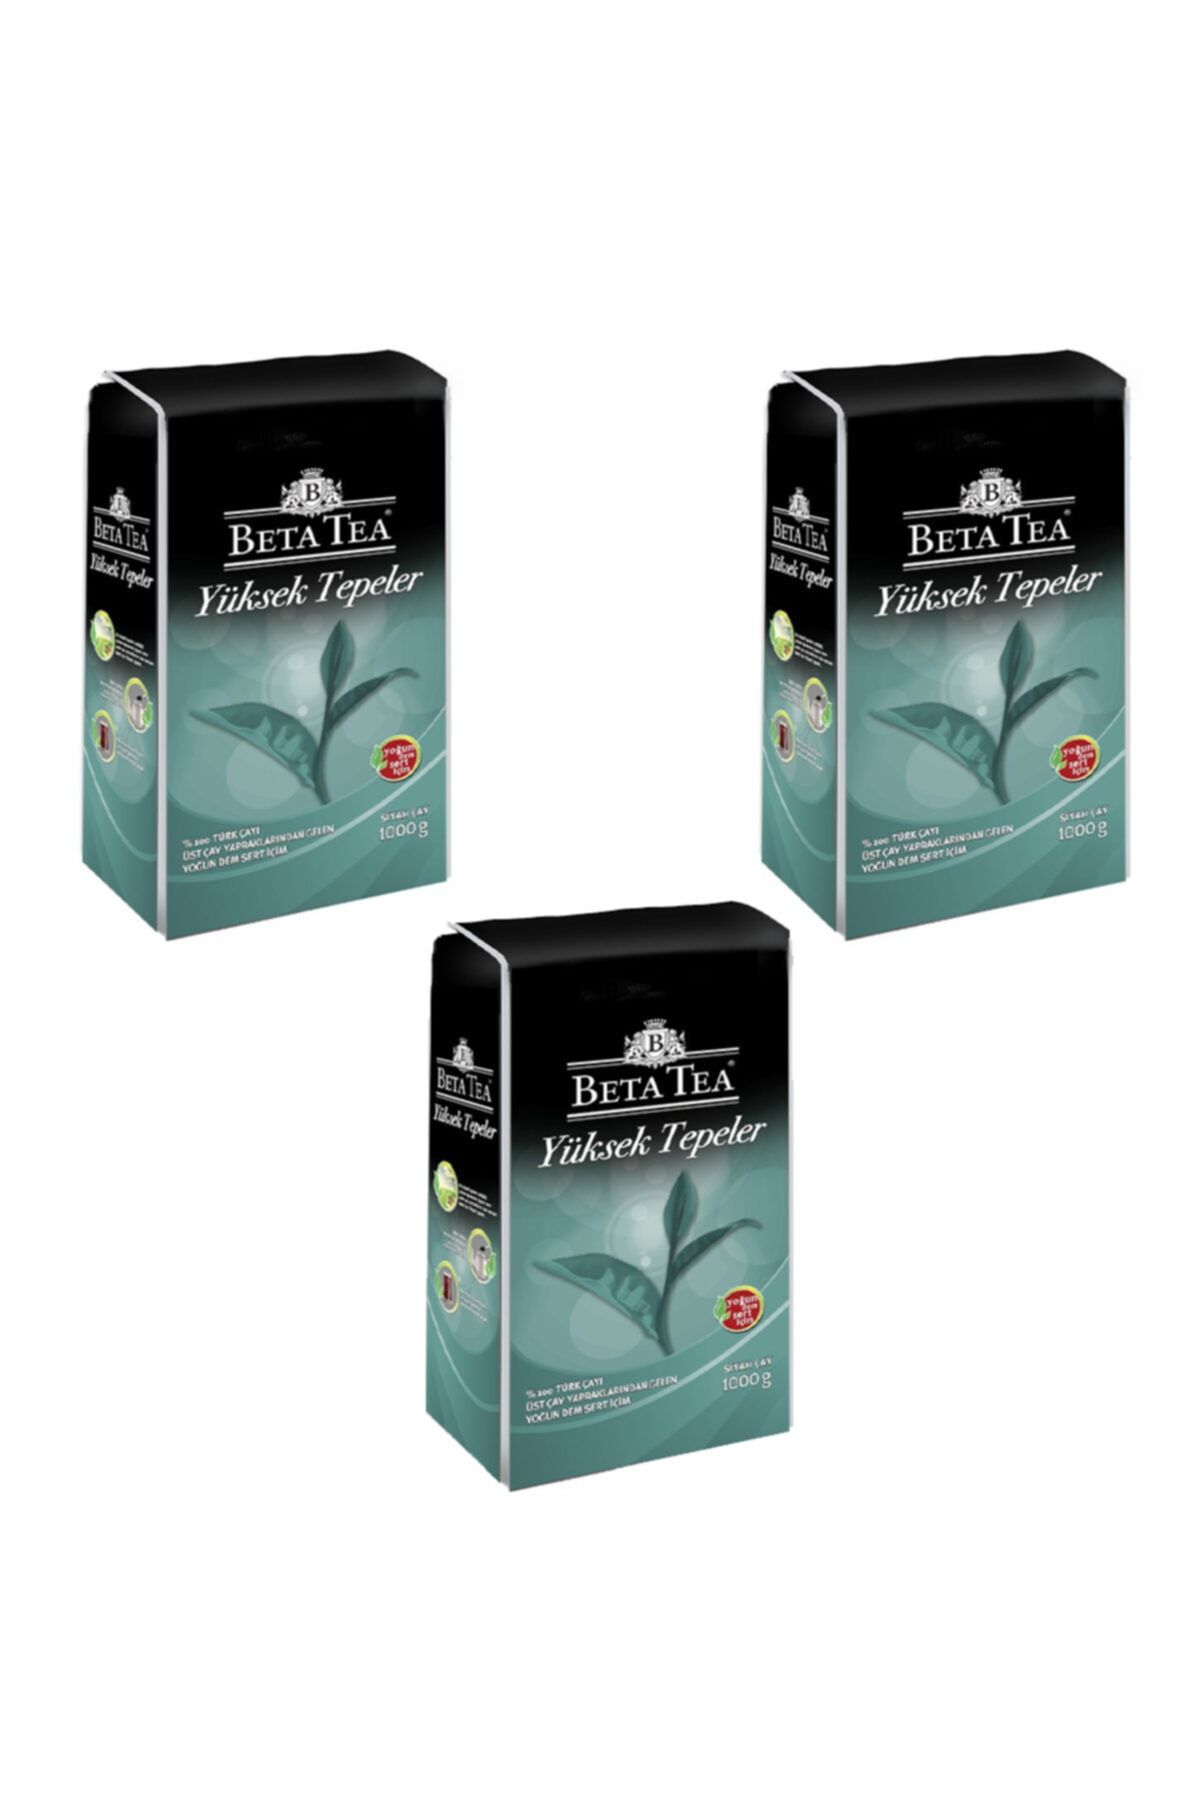 Beta Tea Beta Yüksek Tepeler Dökme Çay 1 Kg X 3 Adet